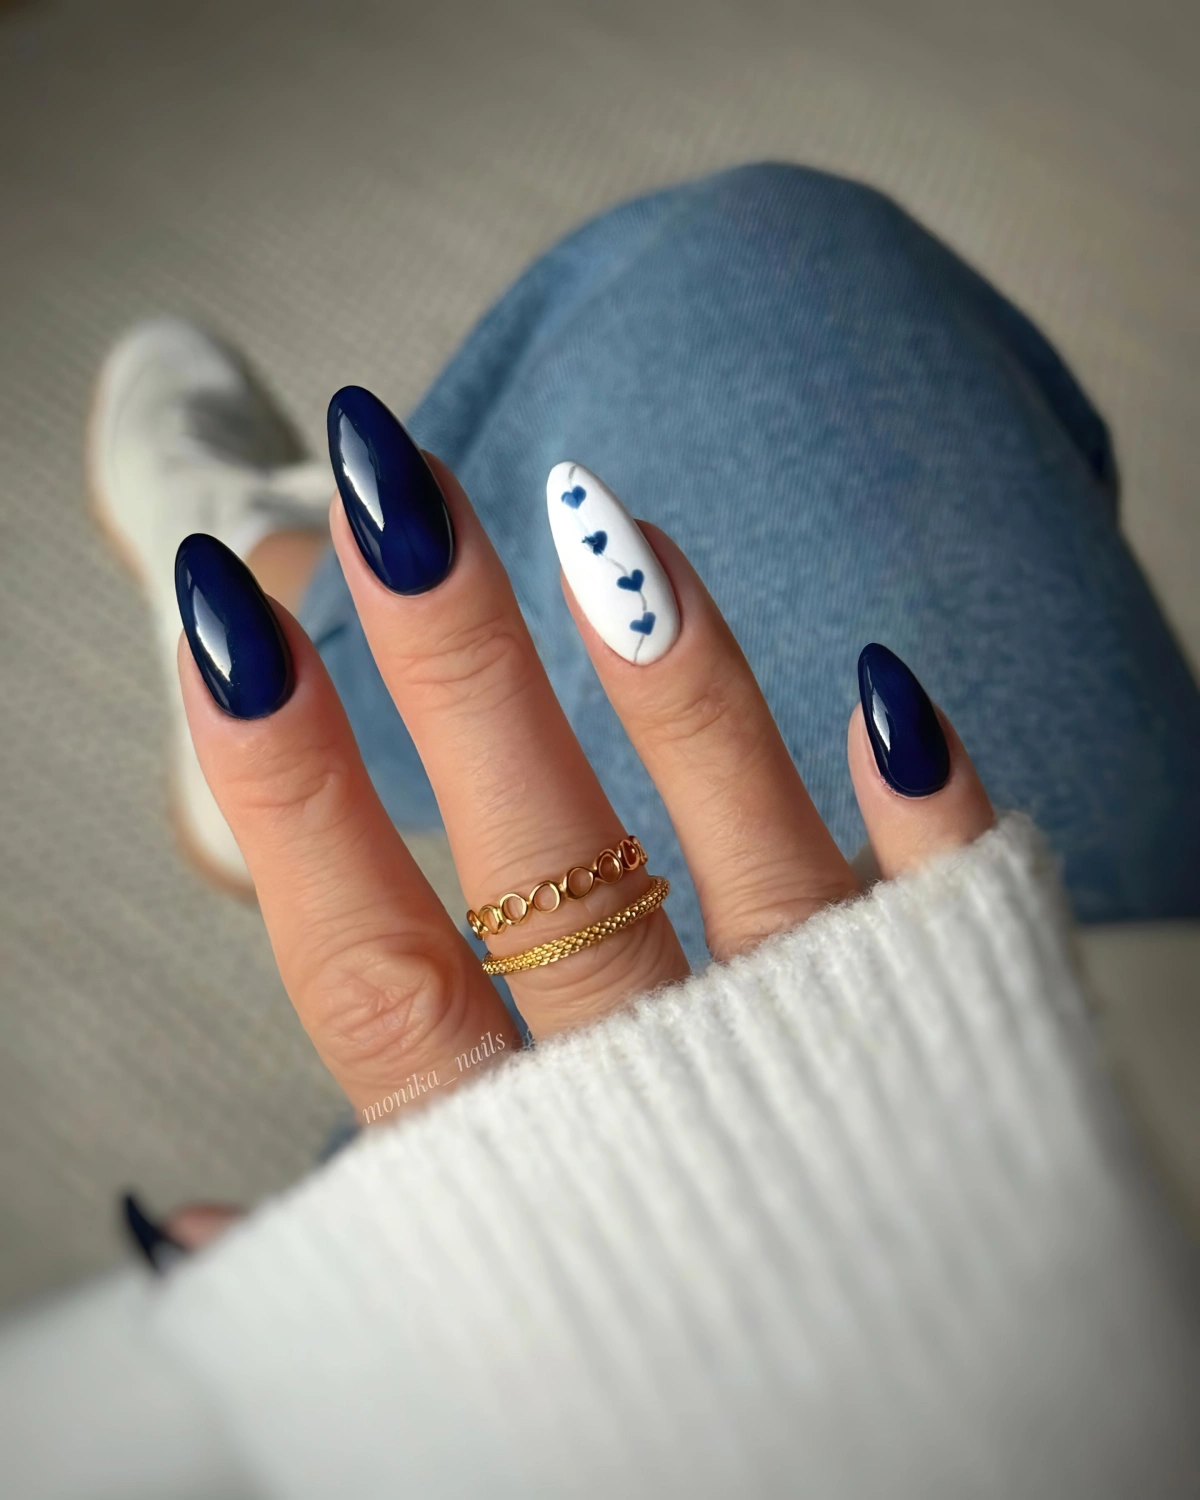 vernis bleu marine ongles longs en amande nail art un quelle forme d ongle pour affiner les doigts